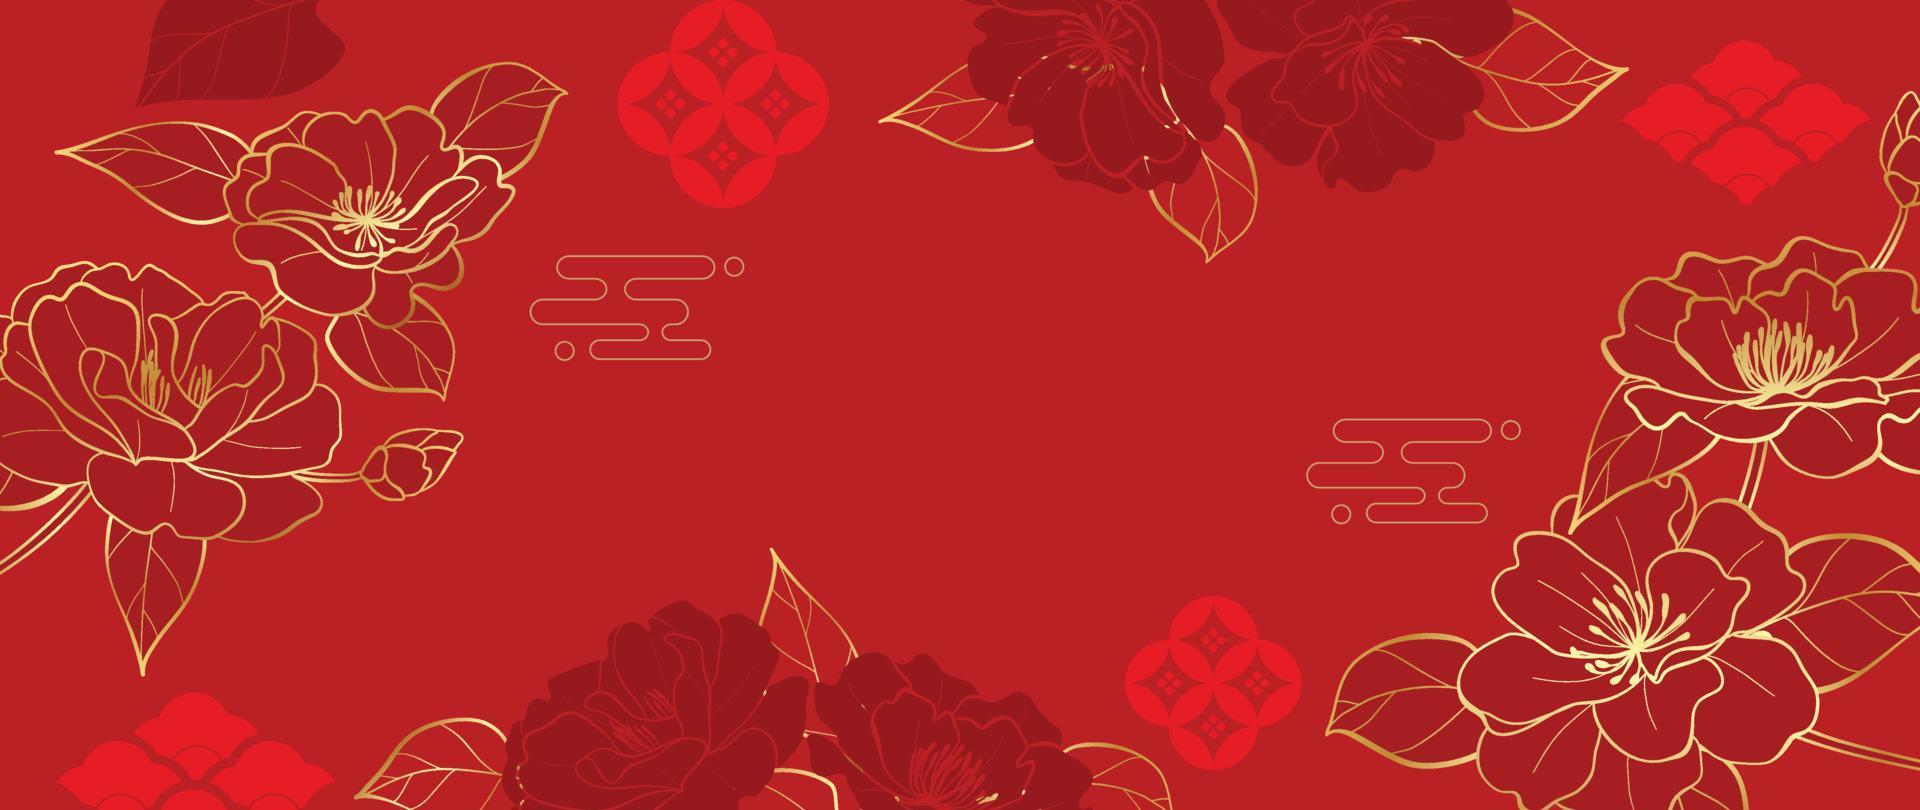 vector de fondo de patrón de estilo de lujo japonés y chino oriental. elegantes flores de cerezo doradas orientales sobre fondo rojo patrón chino. ilustración de diseño para papel tapiz, tarjeta, afiche.